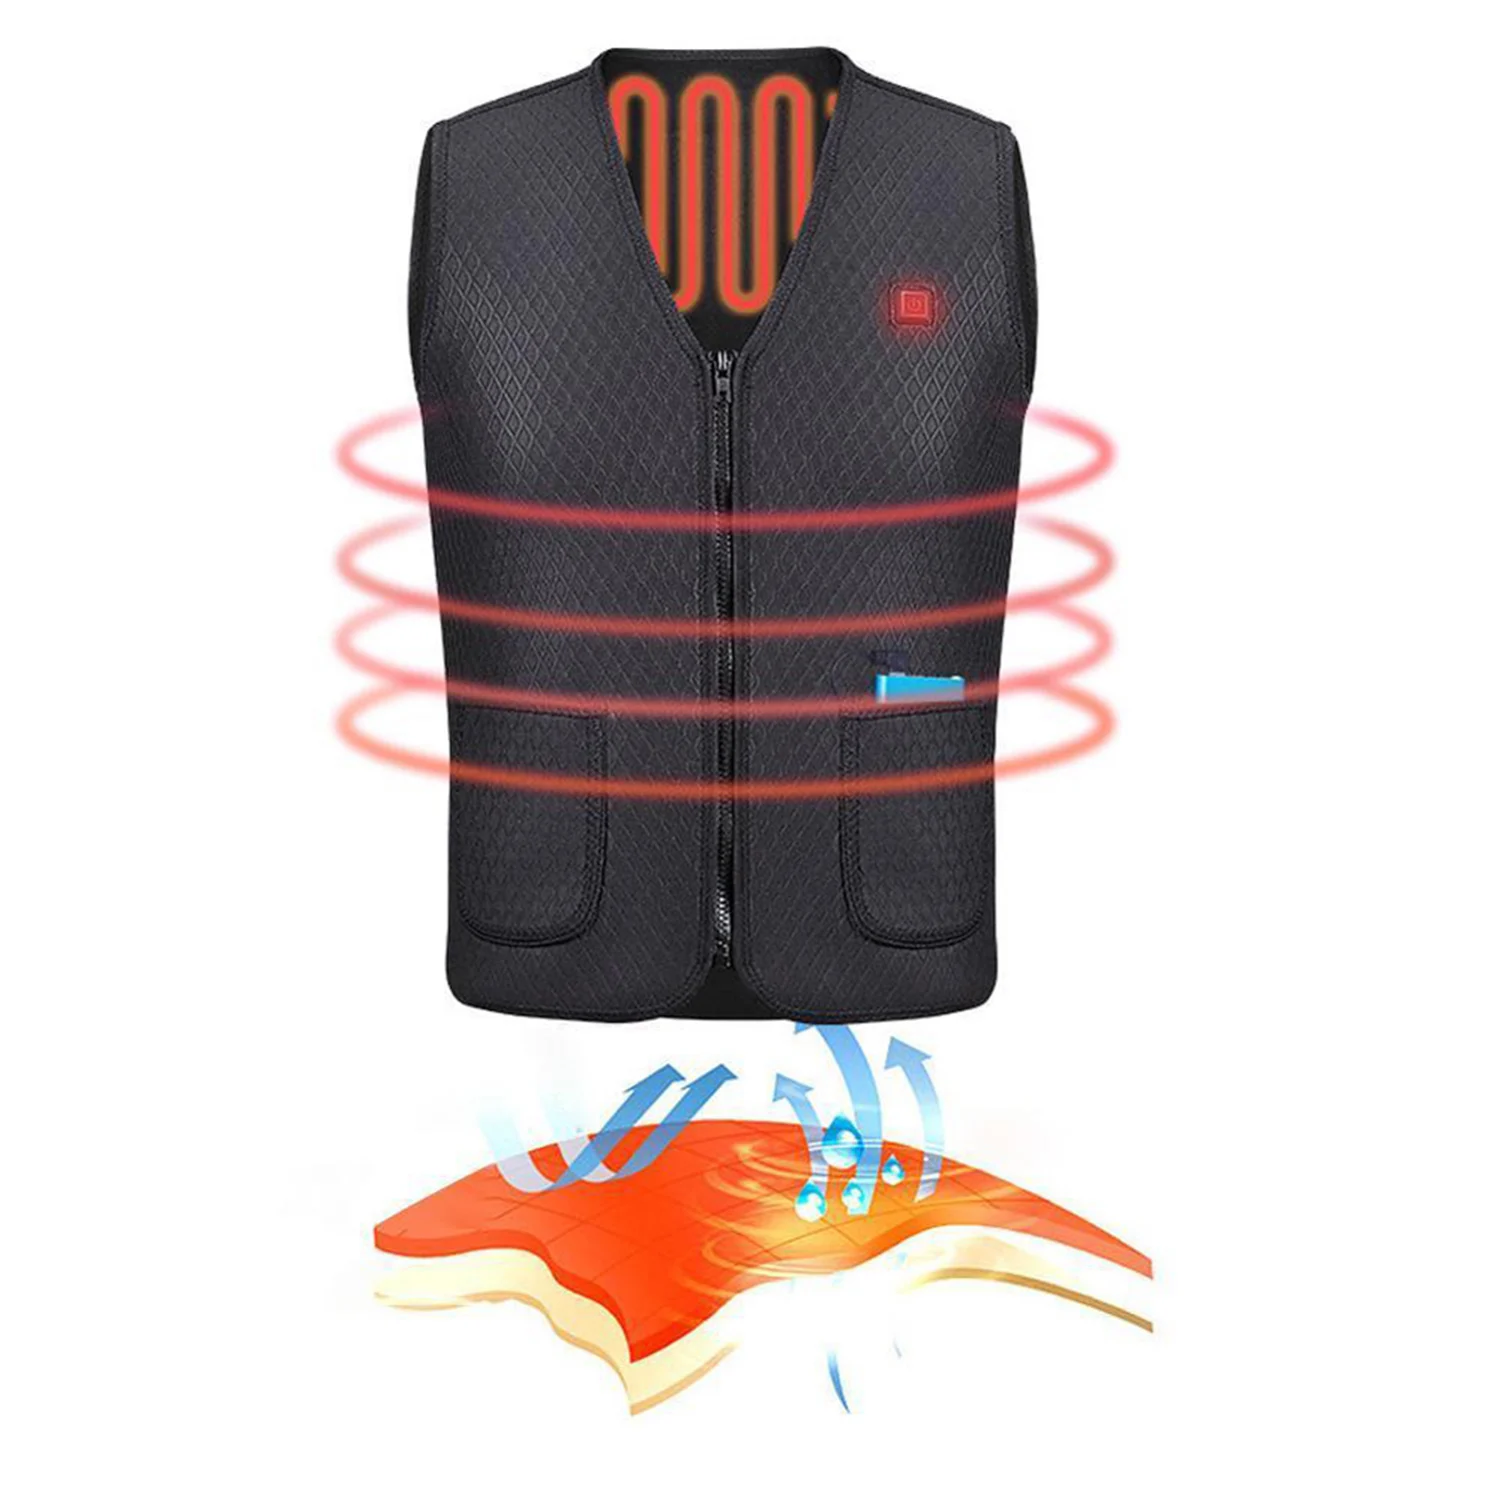 Унисекс согревающий жилет с подогревом Электрический USB теплый жилет с подогревом одежда для зимы мотоцикл путешествия катание на лыжах Пешие прогулки на открытом воздухе